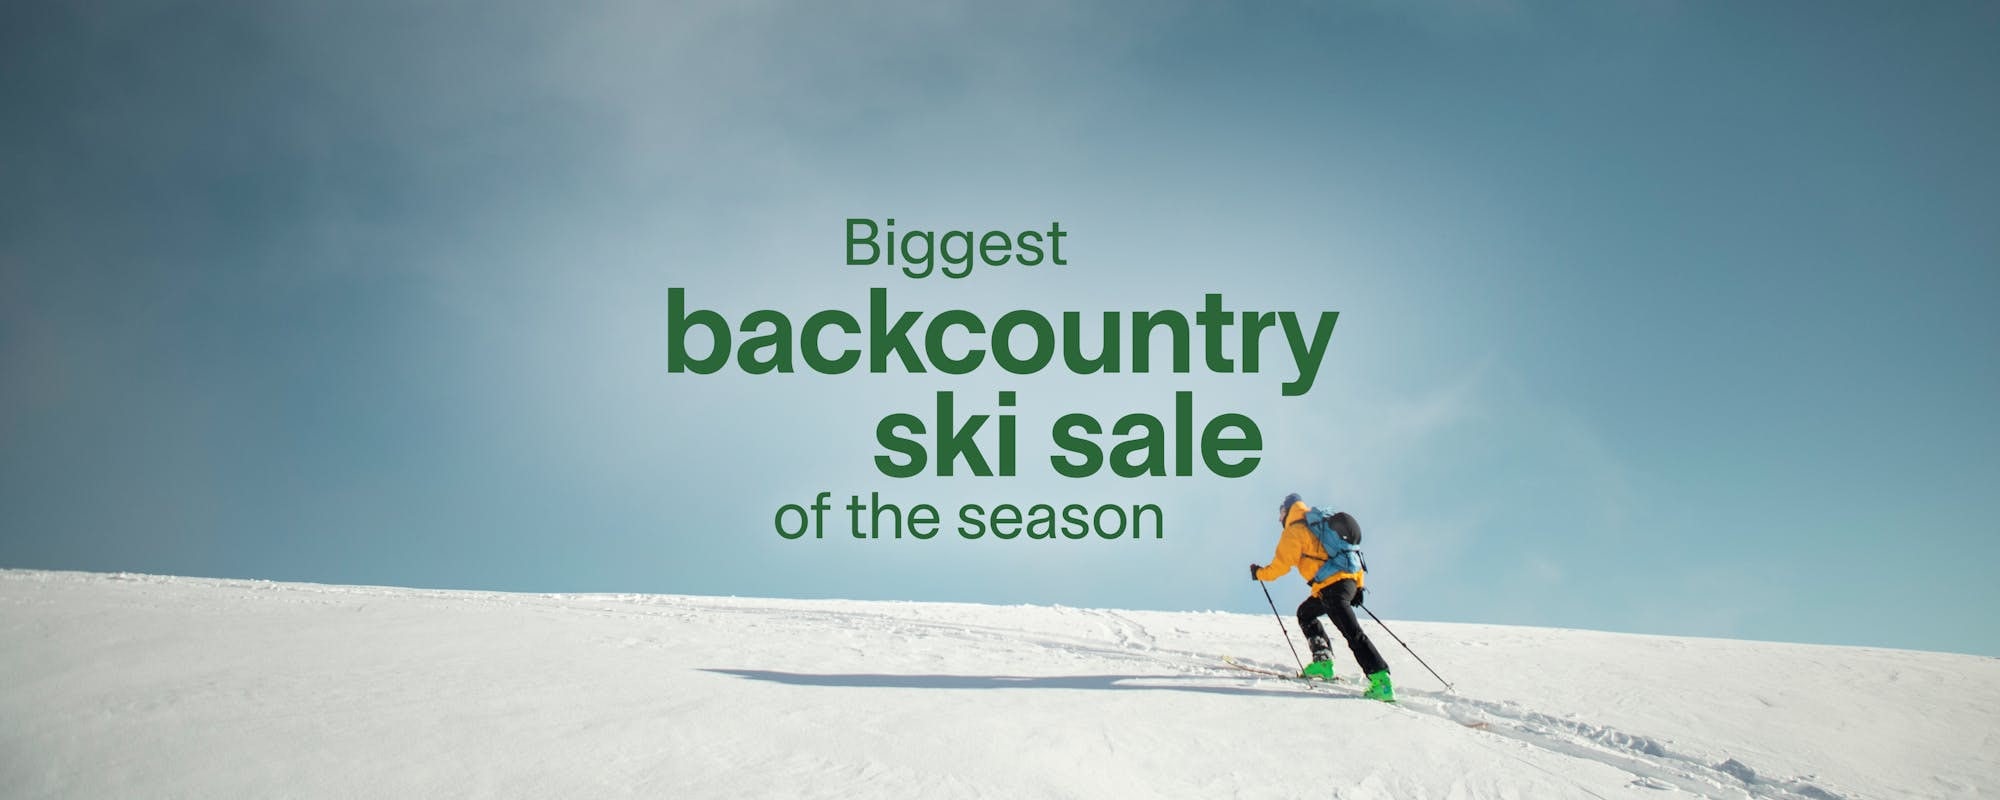 Shop backcountry ski deals